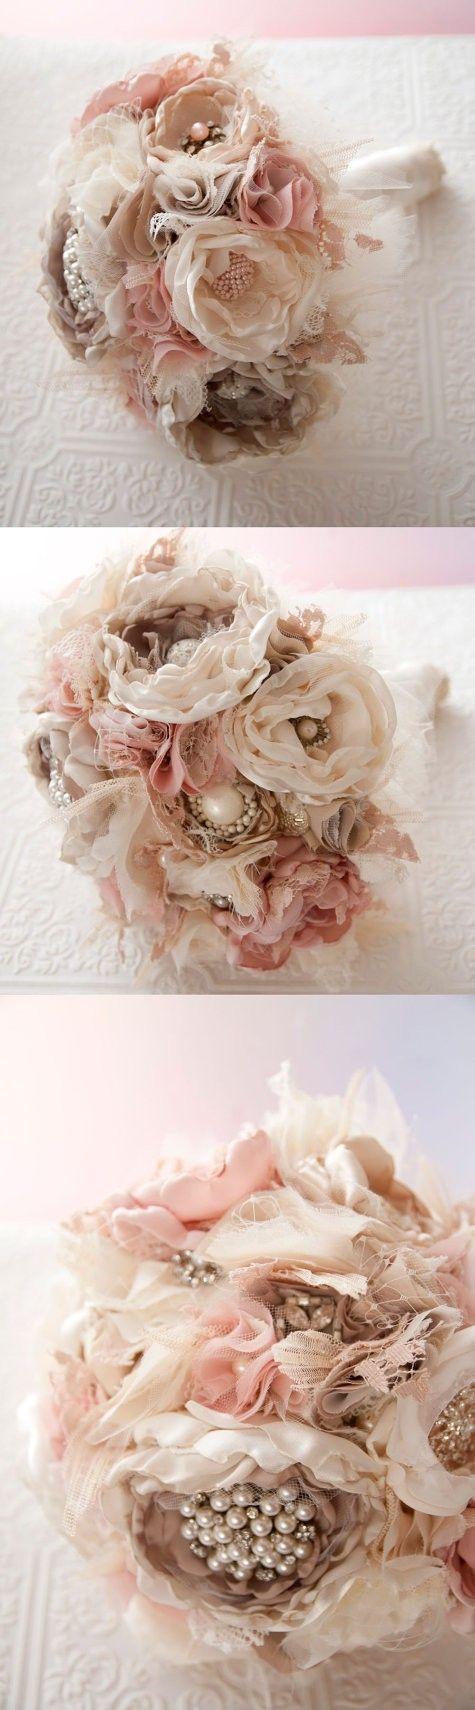 زفاف - Fabric Flower Custom Wedding Bouquet, With Rhinestone And Pearl Brooches, Choose Your Colors